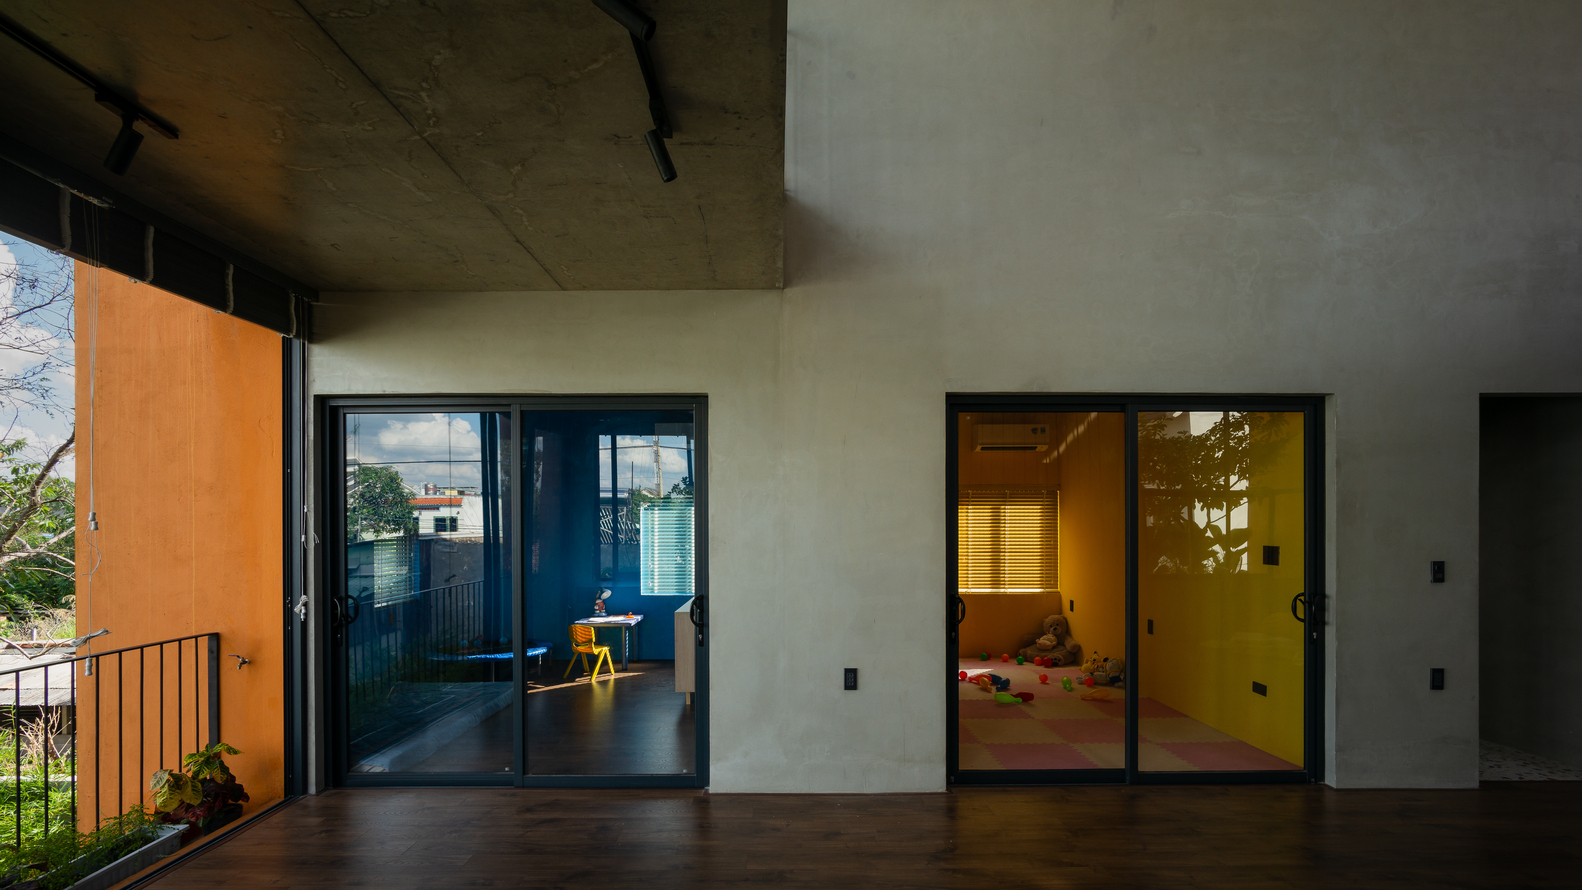 Các phòng trong nhà hầu hết đều sử dụng cửa kính cao rộng nhằm tạo sự thông thoáng, rộng rãi cho không gian sống.